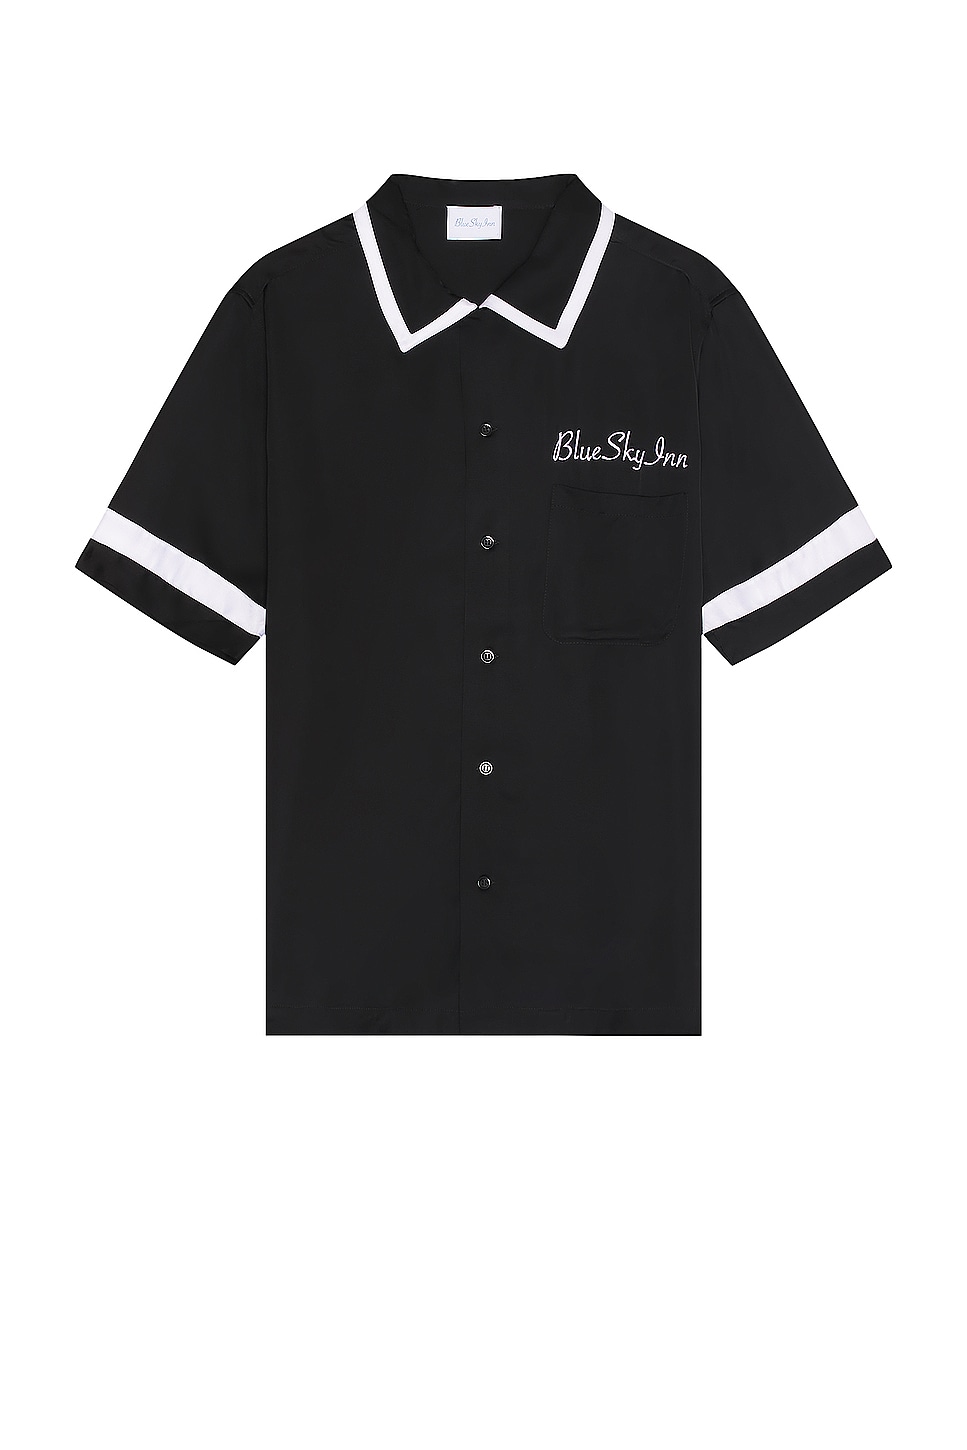 Image 1 of Blue Sky Inn Waiter Shirt in Black